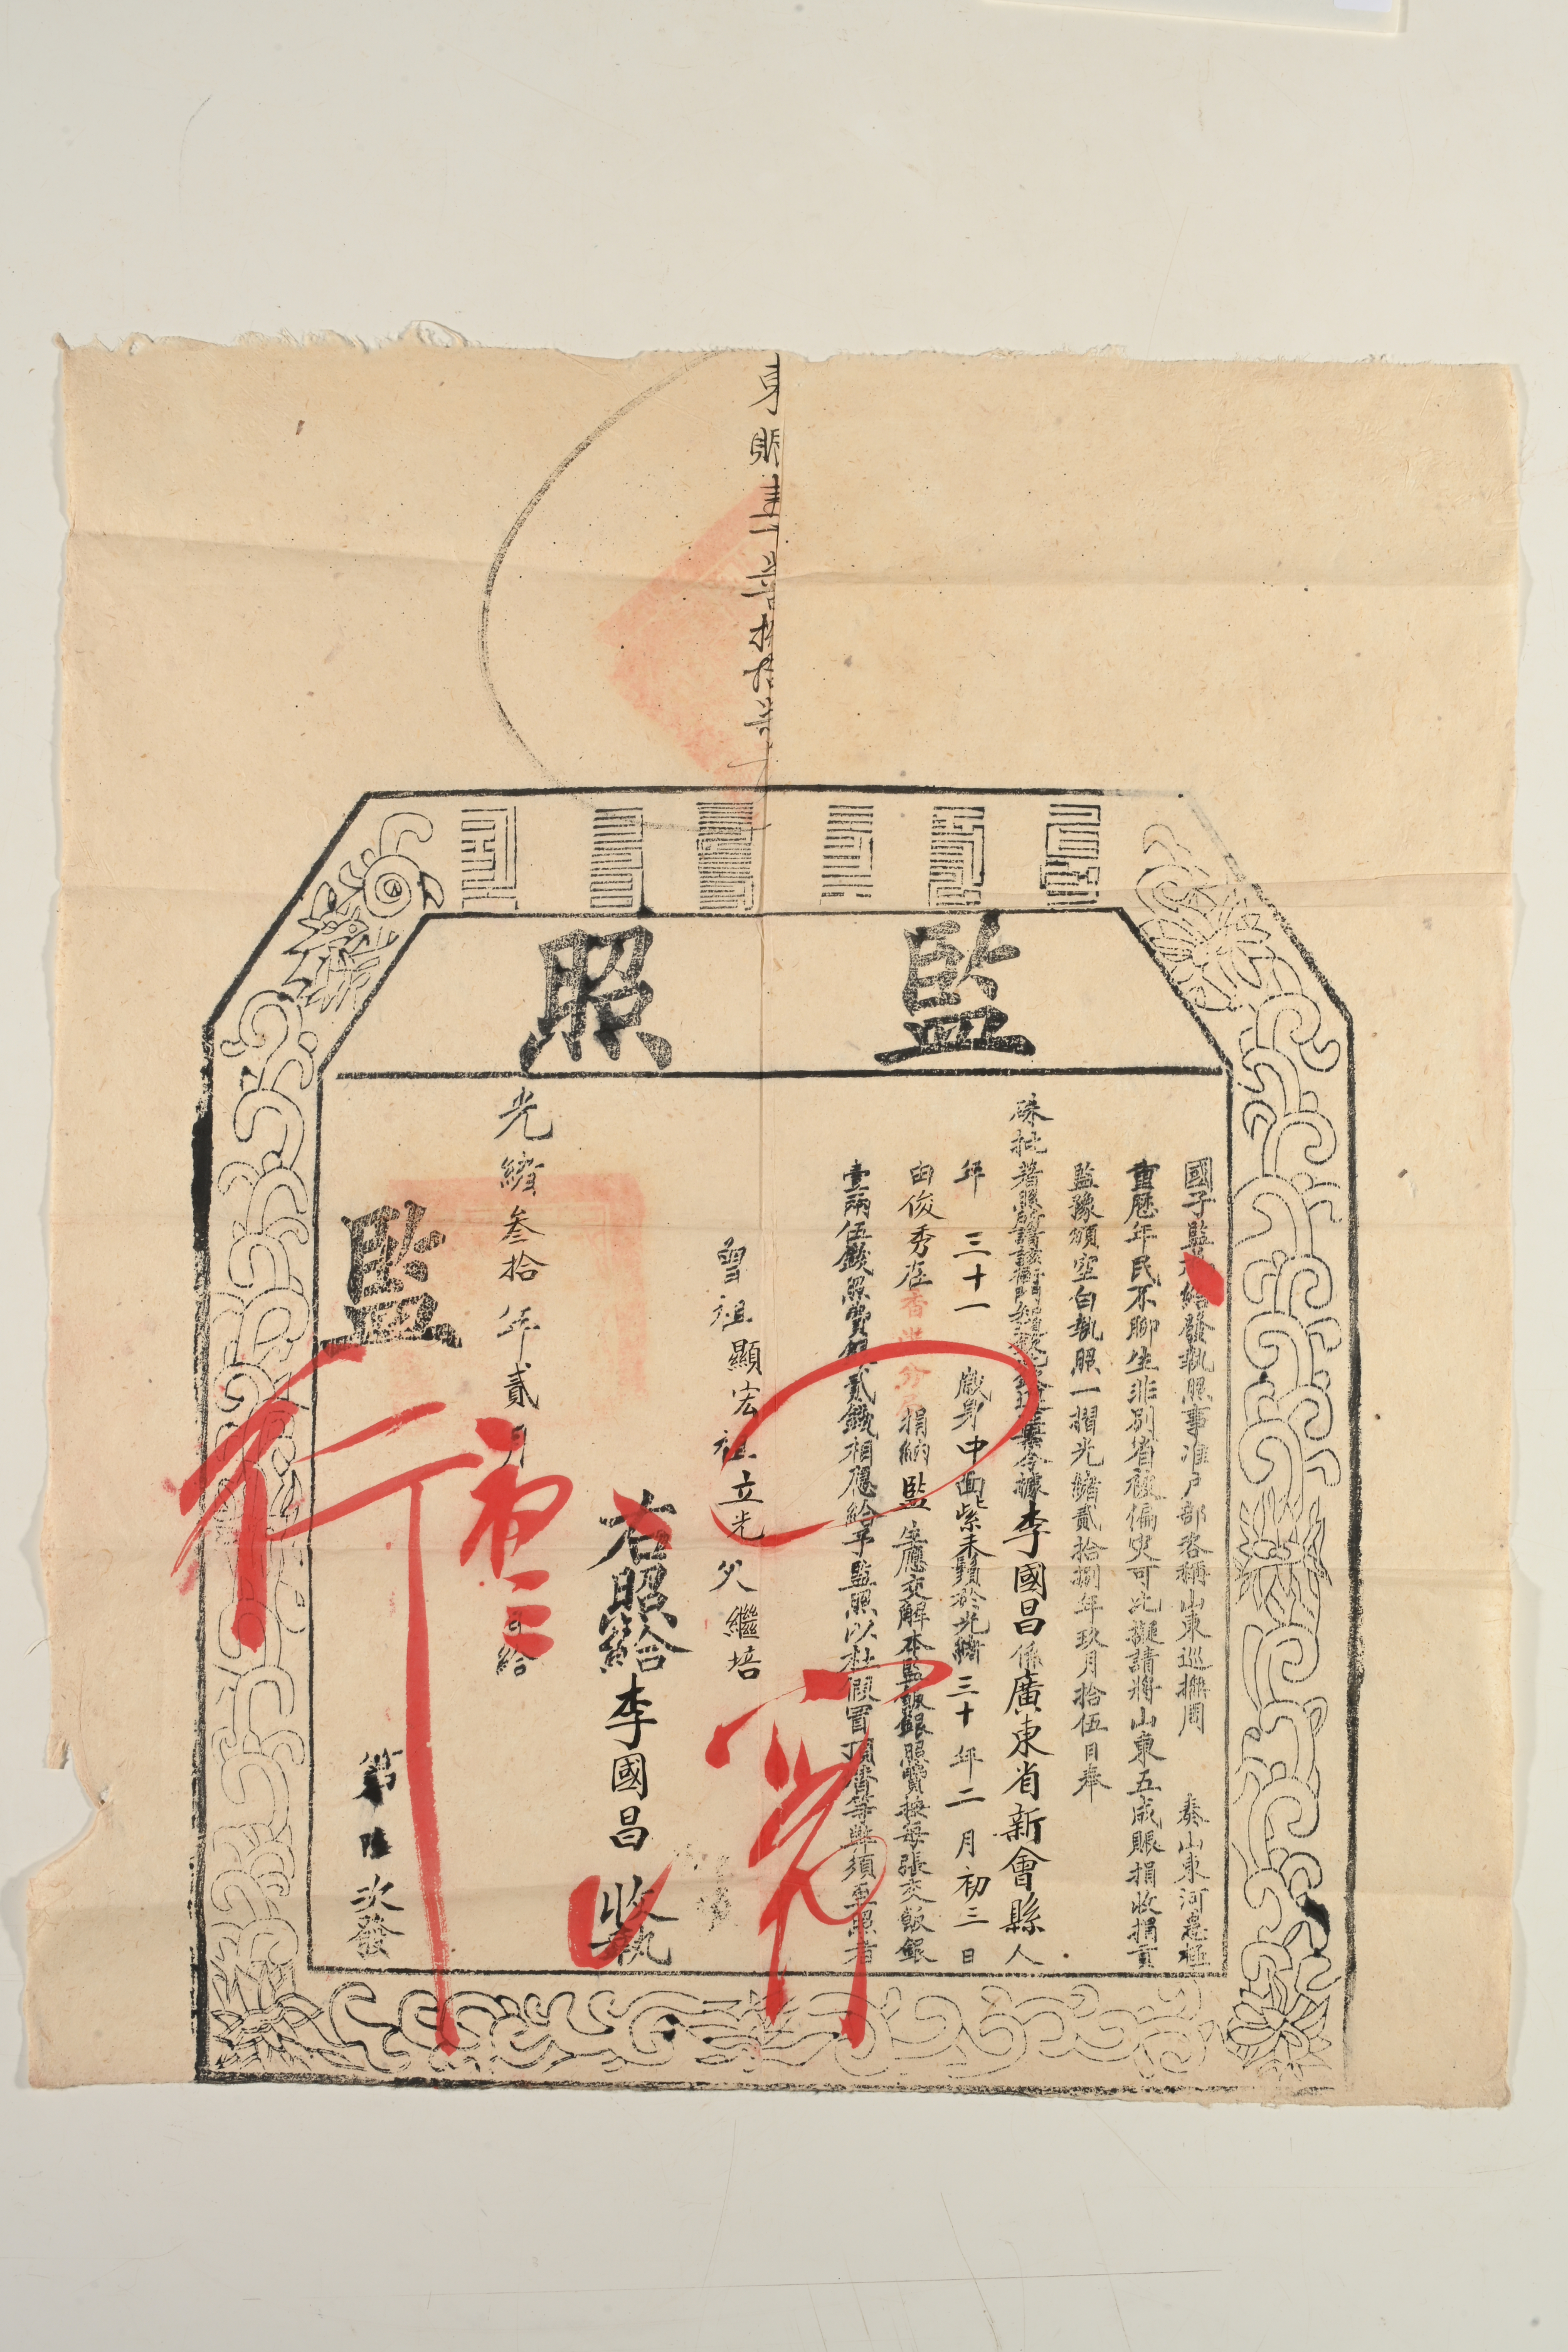 光绪30年(1904年)国子监发出之监照，是通向仕途的入场券。 香港历史博物馆藏